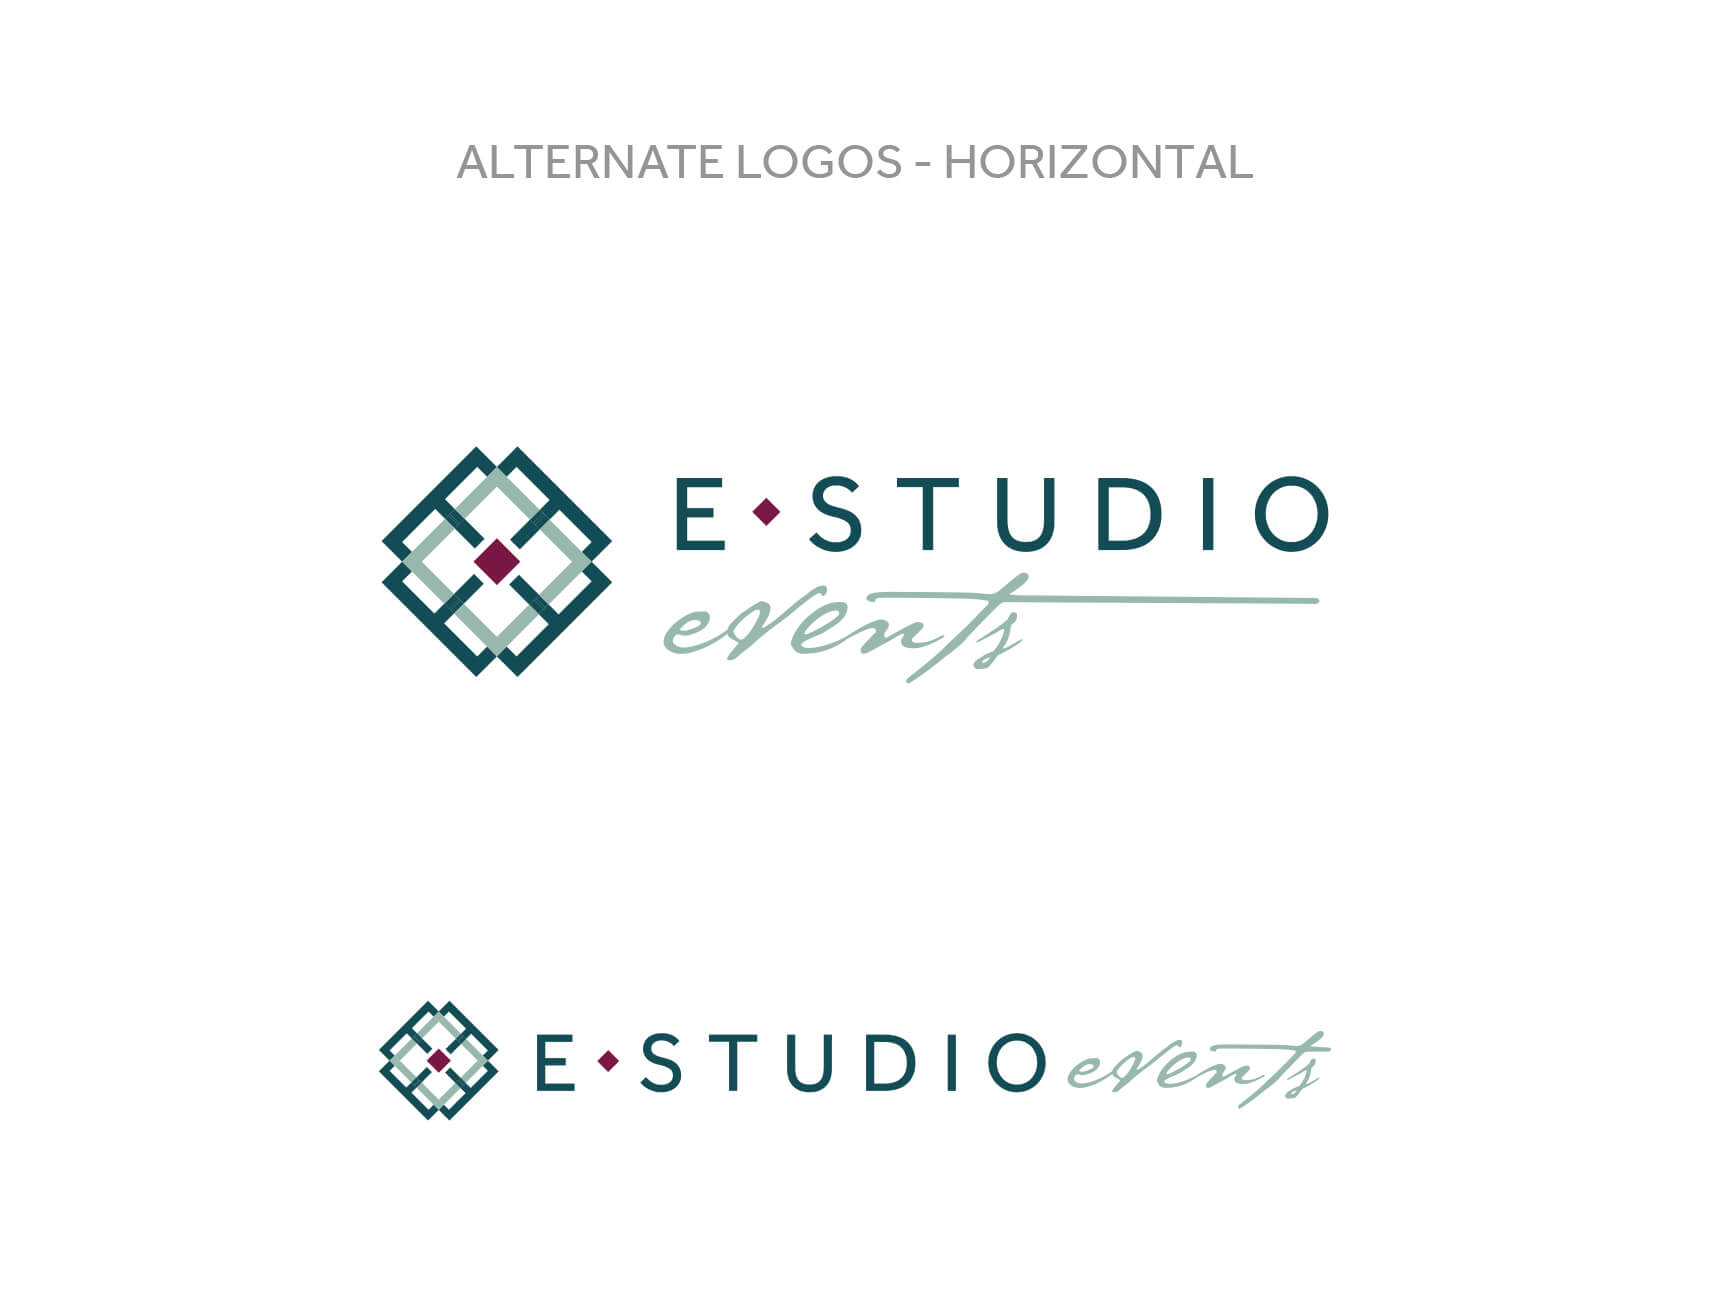 E Studio Events Secondary Logo